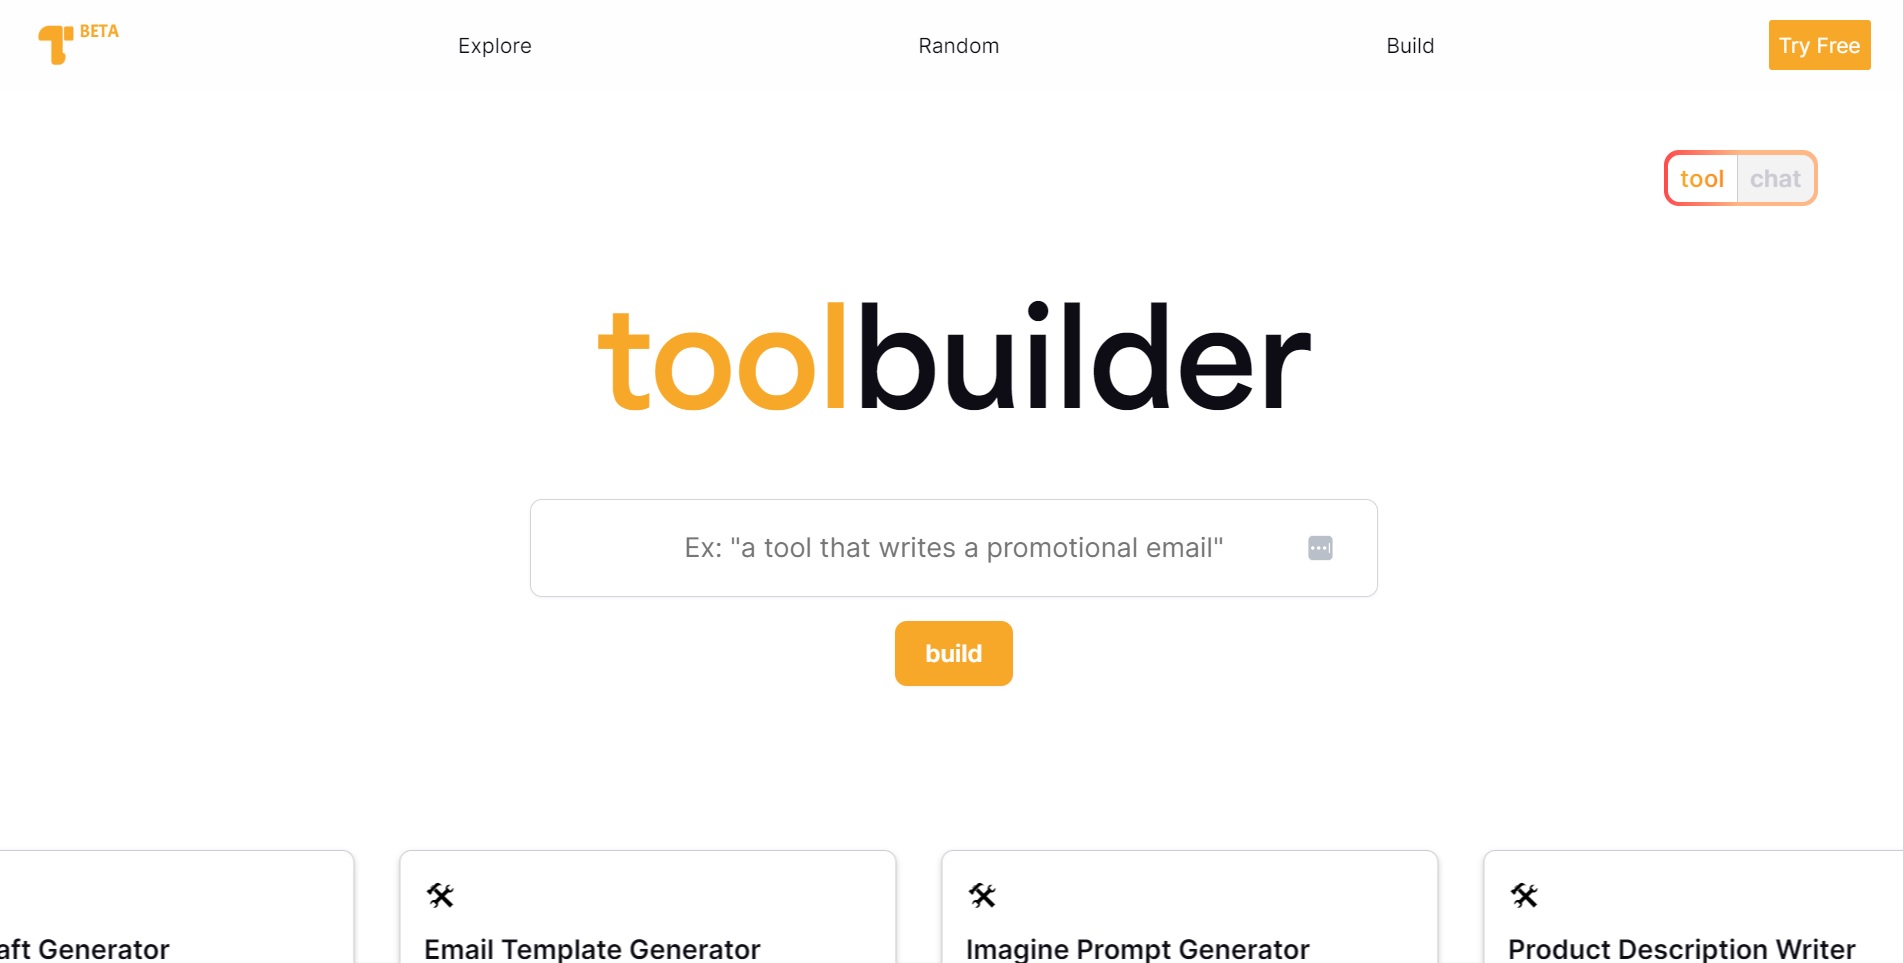 ToolBuilder